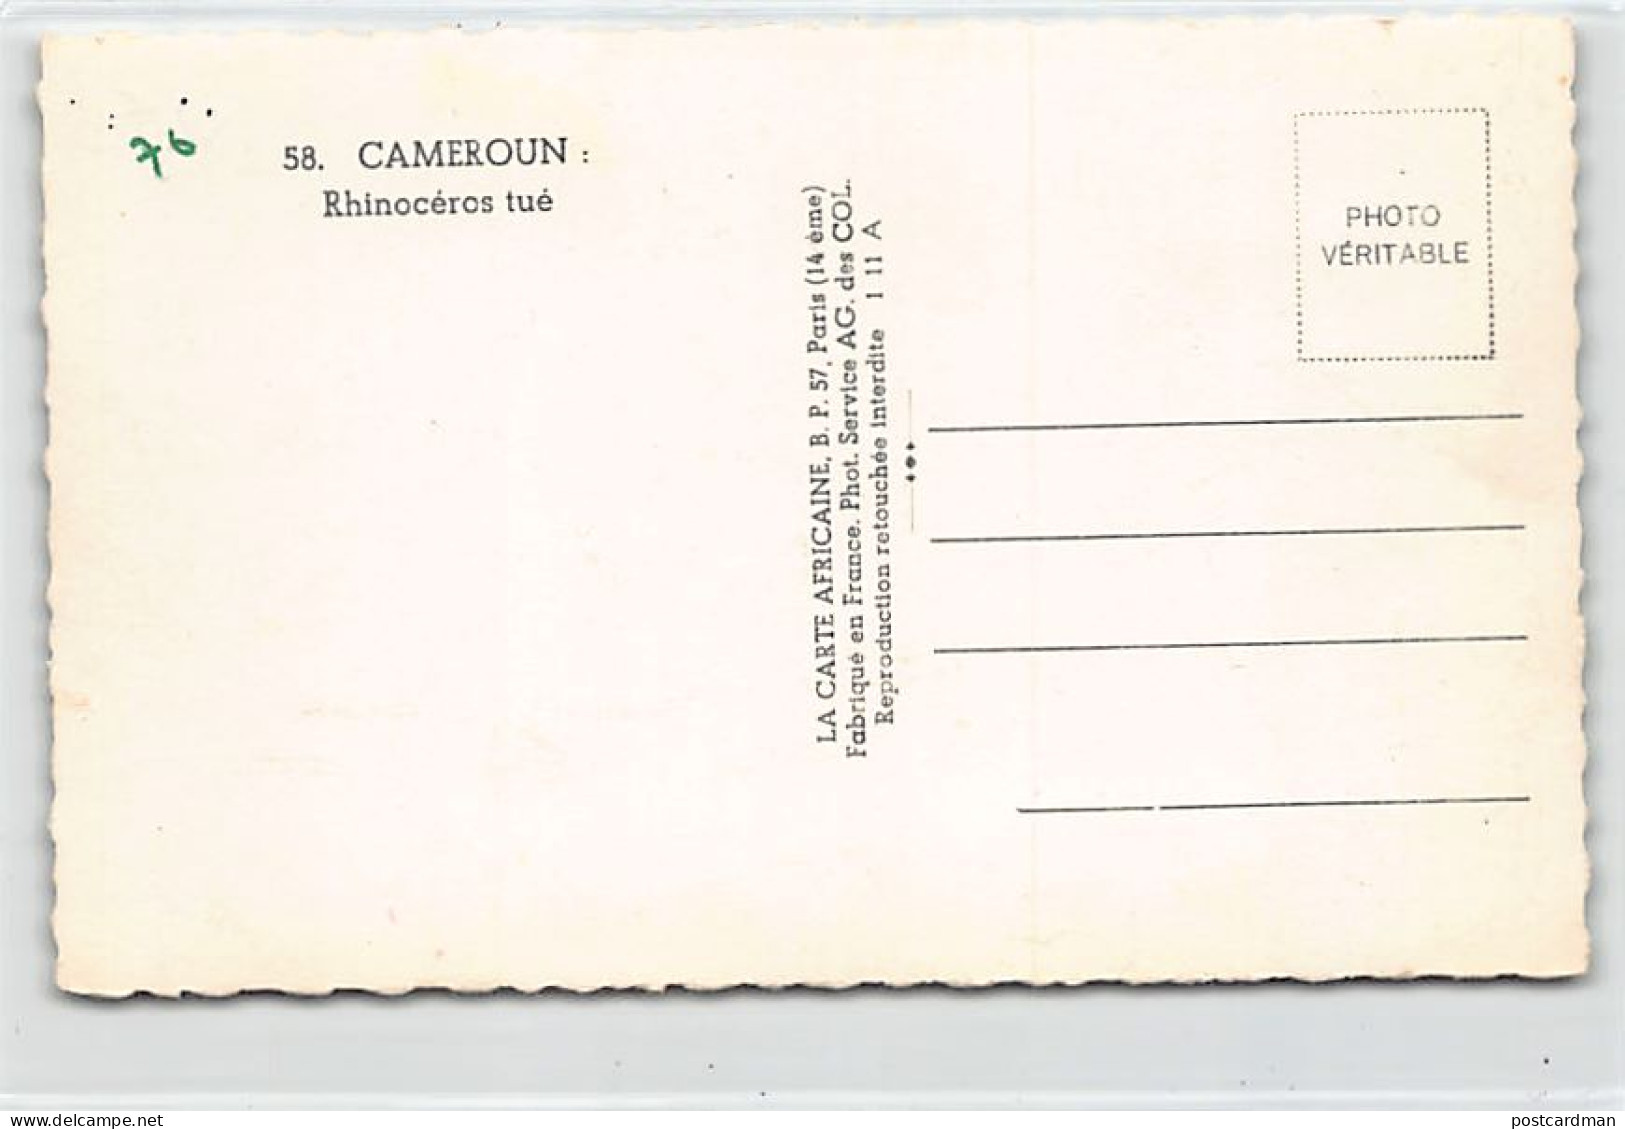 Cameroun - Rhinocéros Tué - Ed. La Carte Africaine 58 - Kameroen